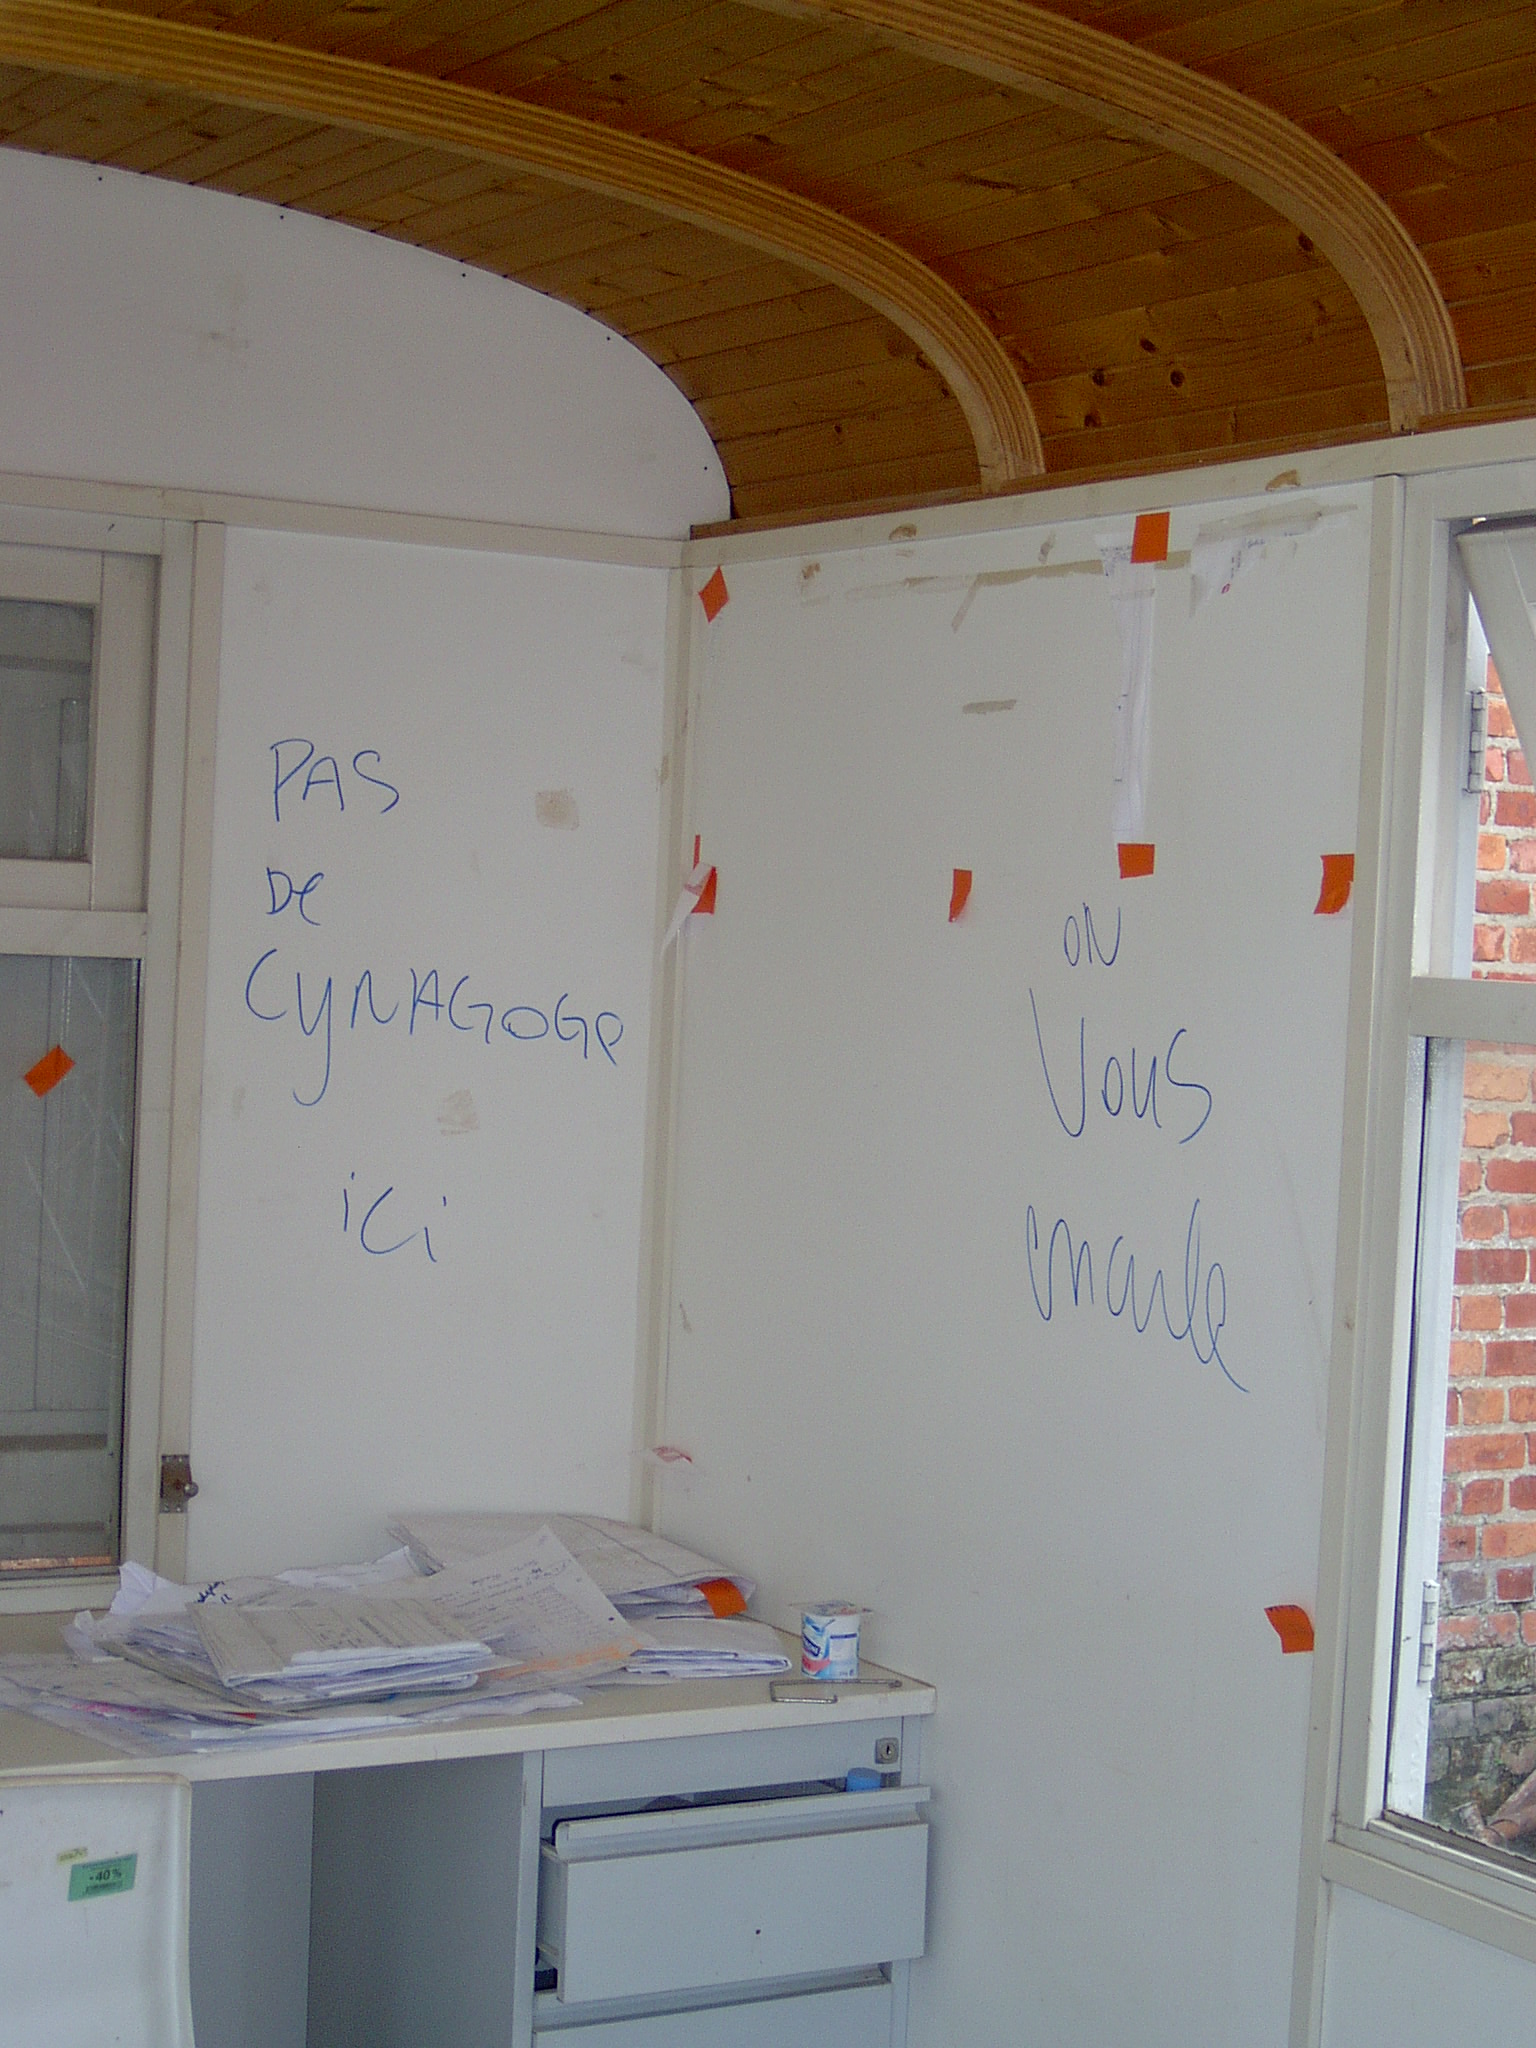 Vandalisme sur le chantier d'une synagogue à Bruxelles